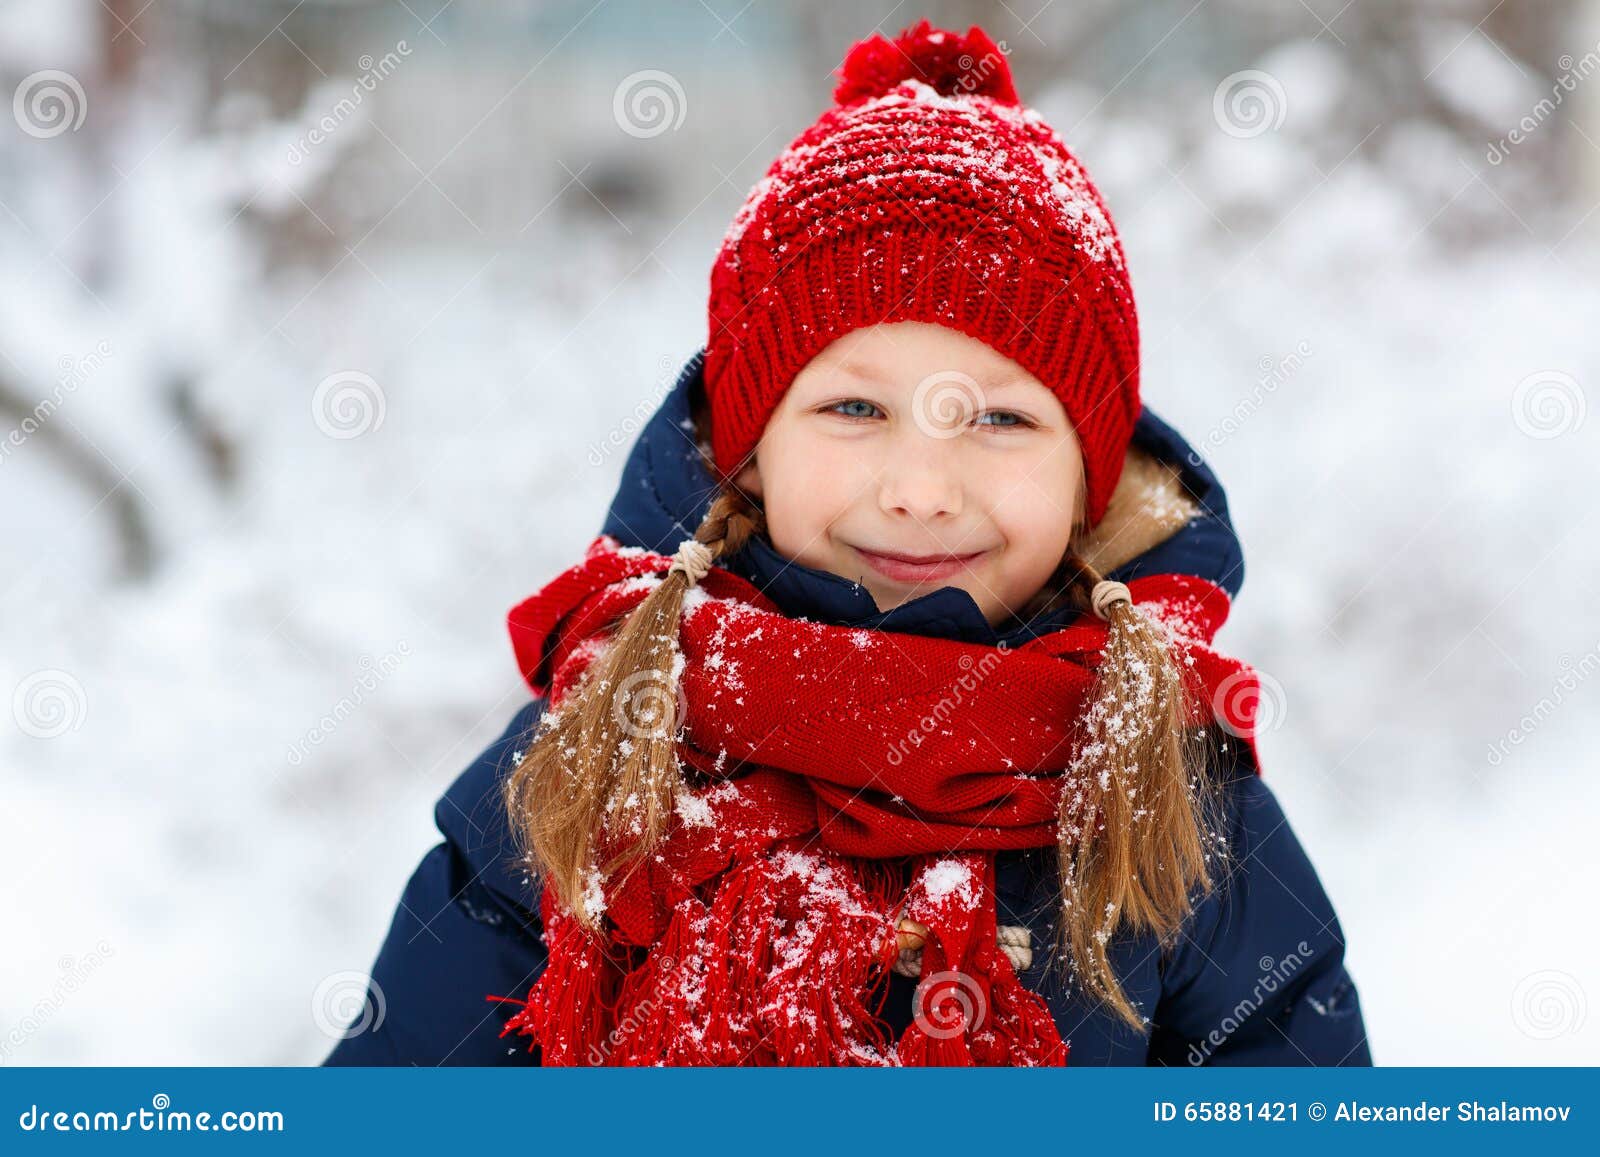 冬至小女孩大雪窗外看雪人风景插画图片-千库网